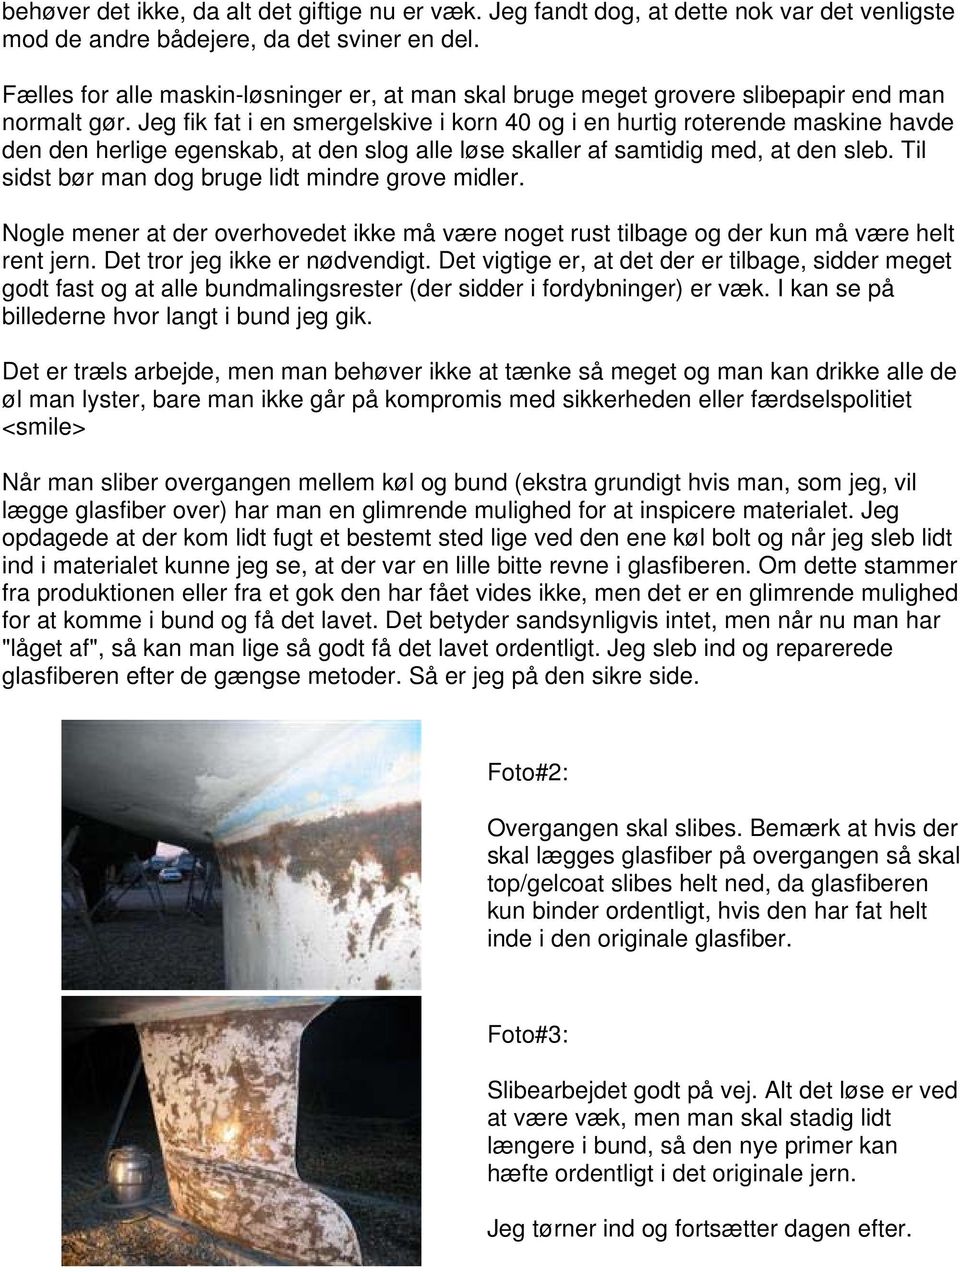 Rustbehandling af kølen - af Bjarke M. Christensen - PDF Gratis ...